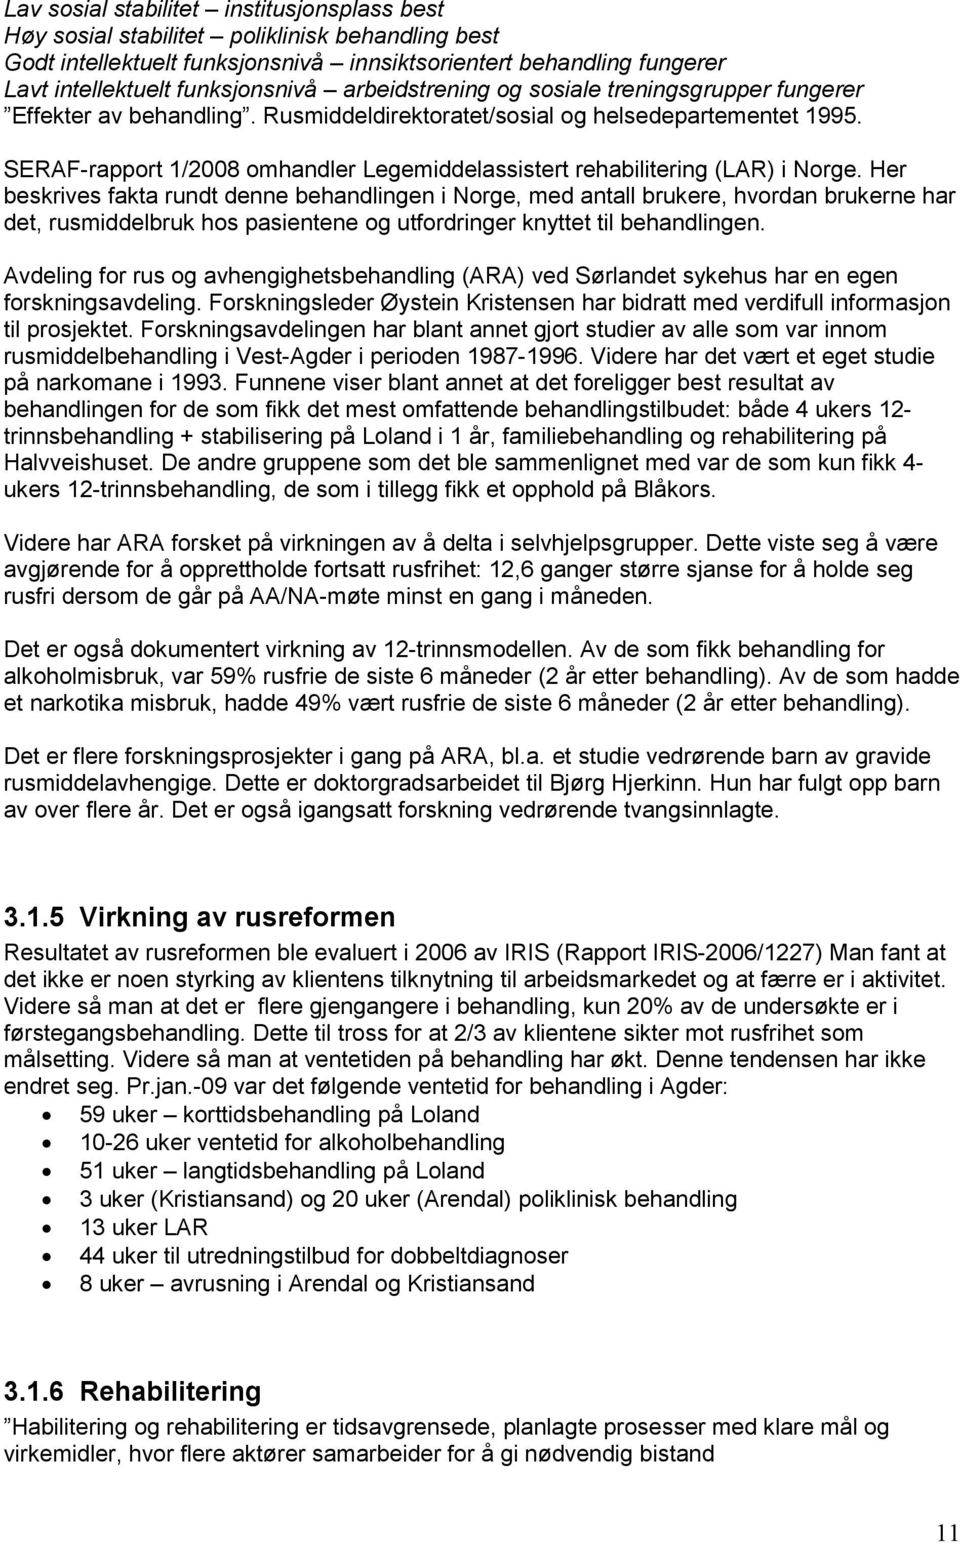 SERAF-rapport 1/2008 omhandler Legemiddelassistert rehabilitering (LAR) i Norge.